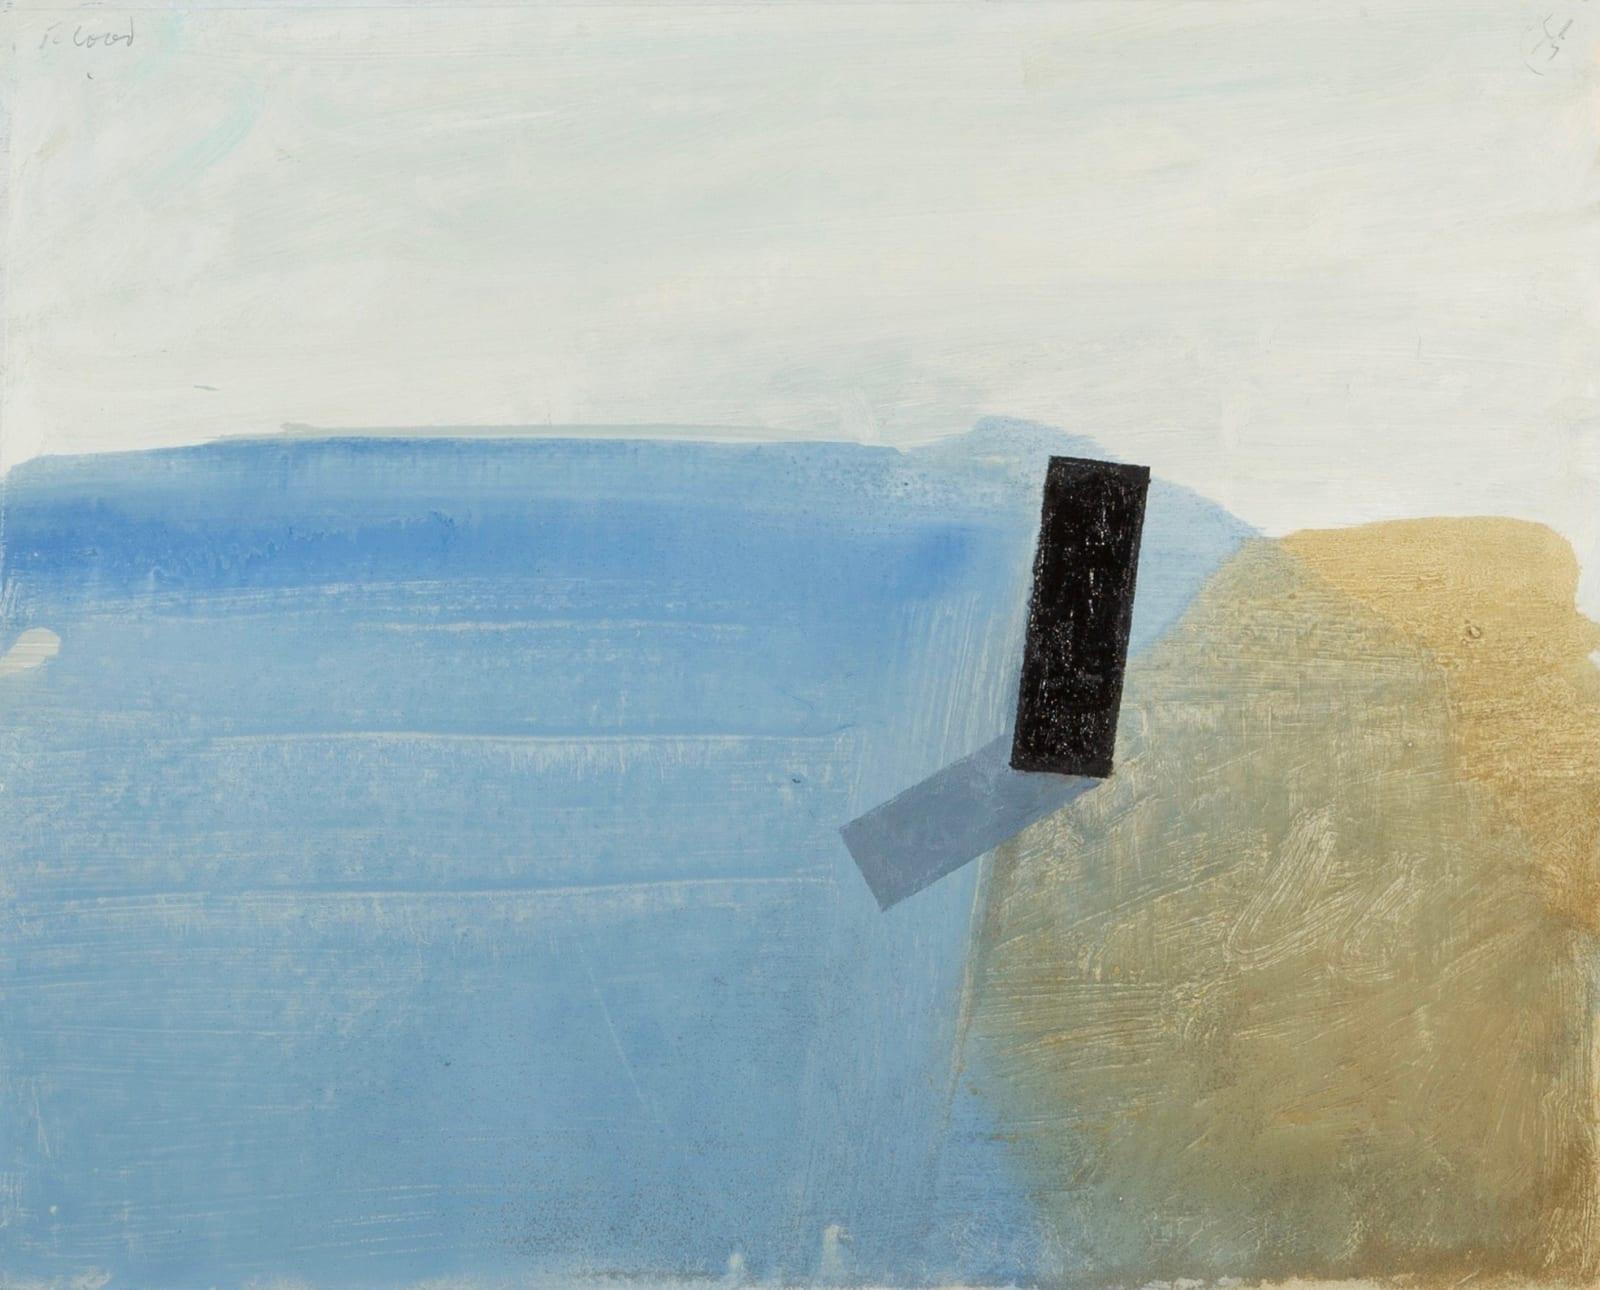 Peinture à l'huile et au sable sur panneau "Inondation" de Keith Purser Né en 1944, 2015

Informations complémentaires :
Médium : Huile et sable sur panneau
Dimensions : 15 3/4 x 19 1/2 in
40 x 49.5 cm

Keith Purser vit et travaille à la limite de